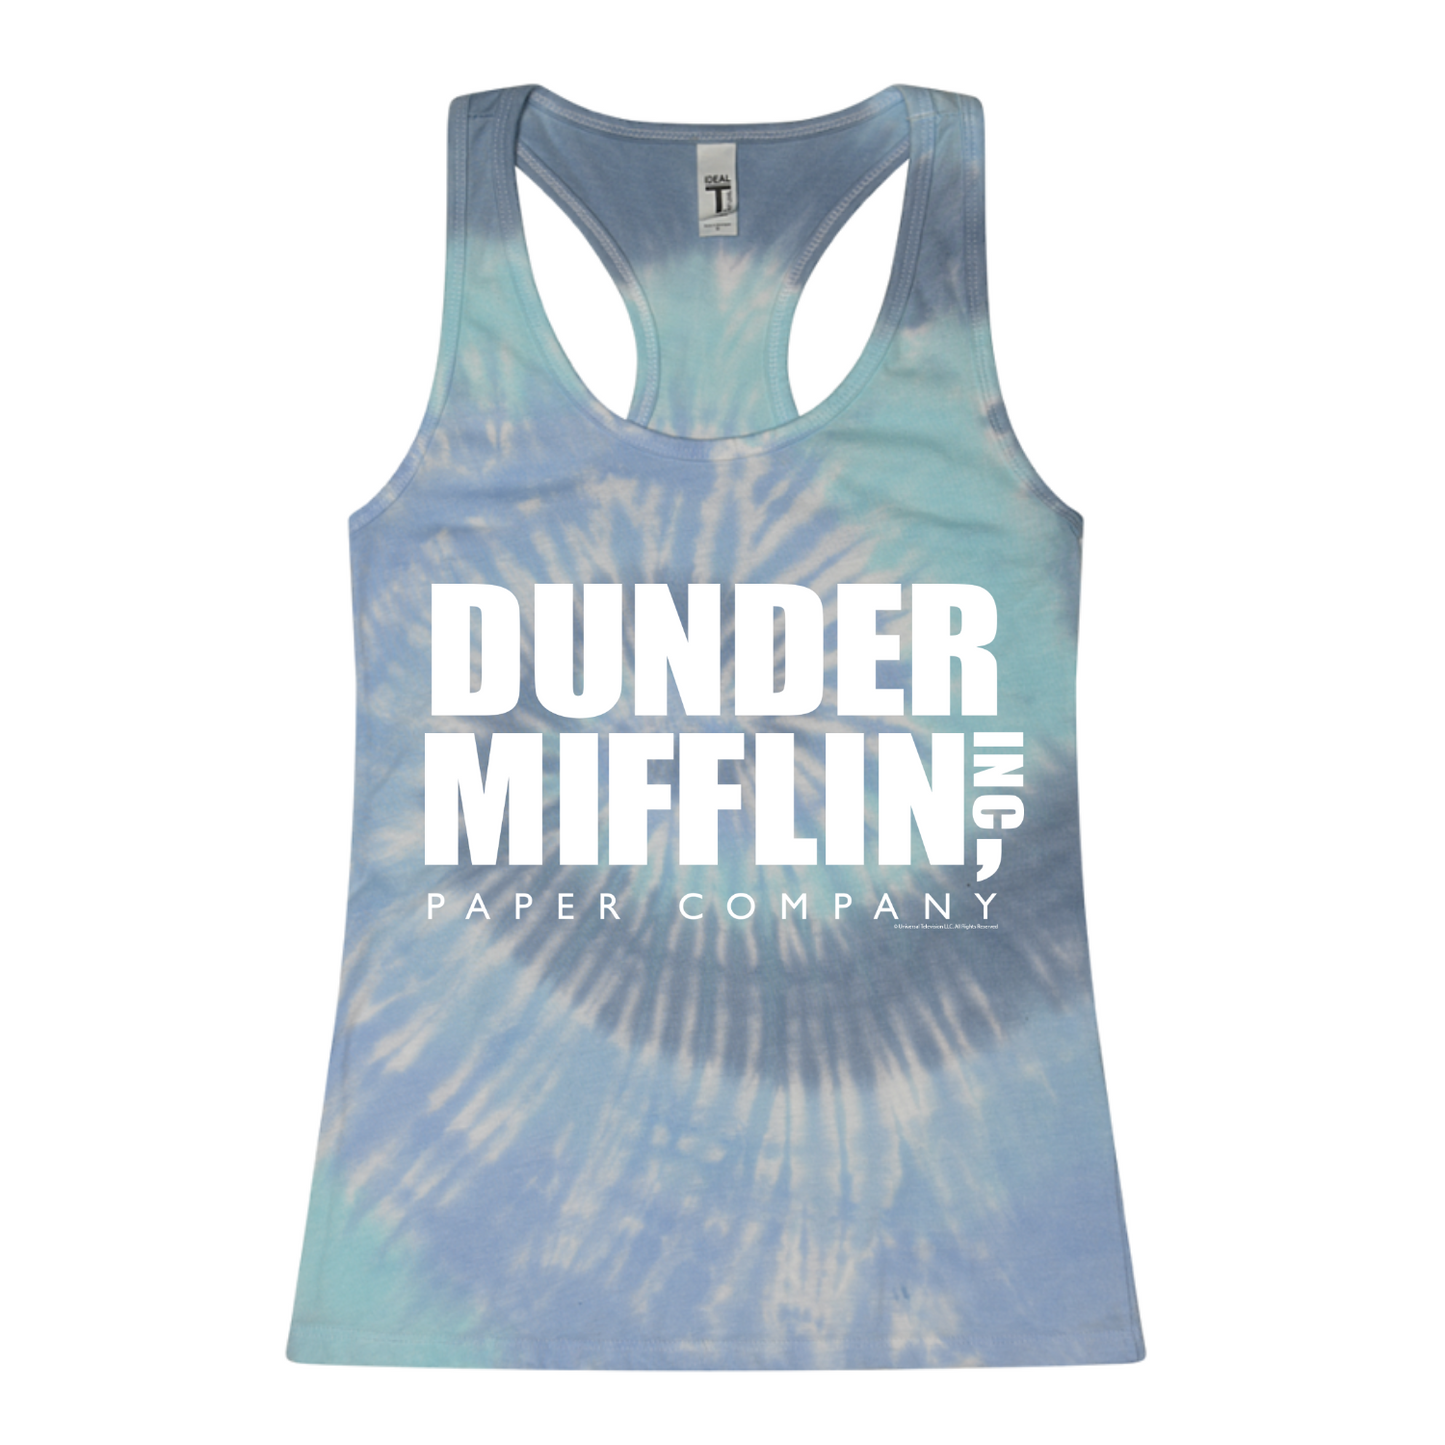 The Office Dunder Mifflin Tie-Dye T-Shirt